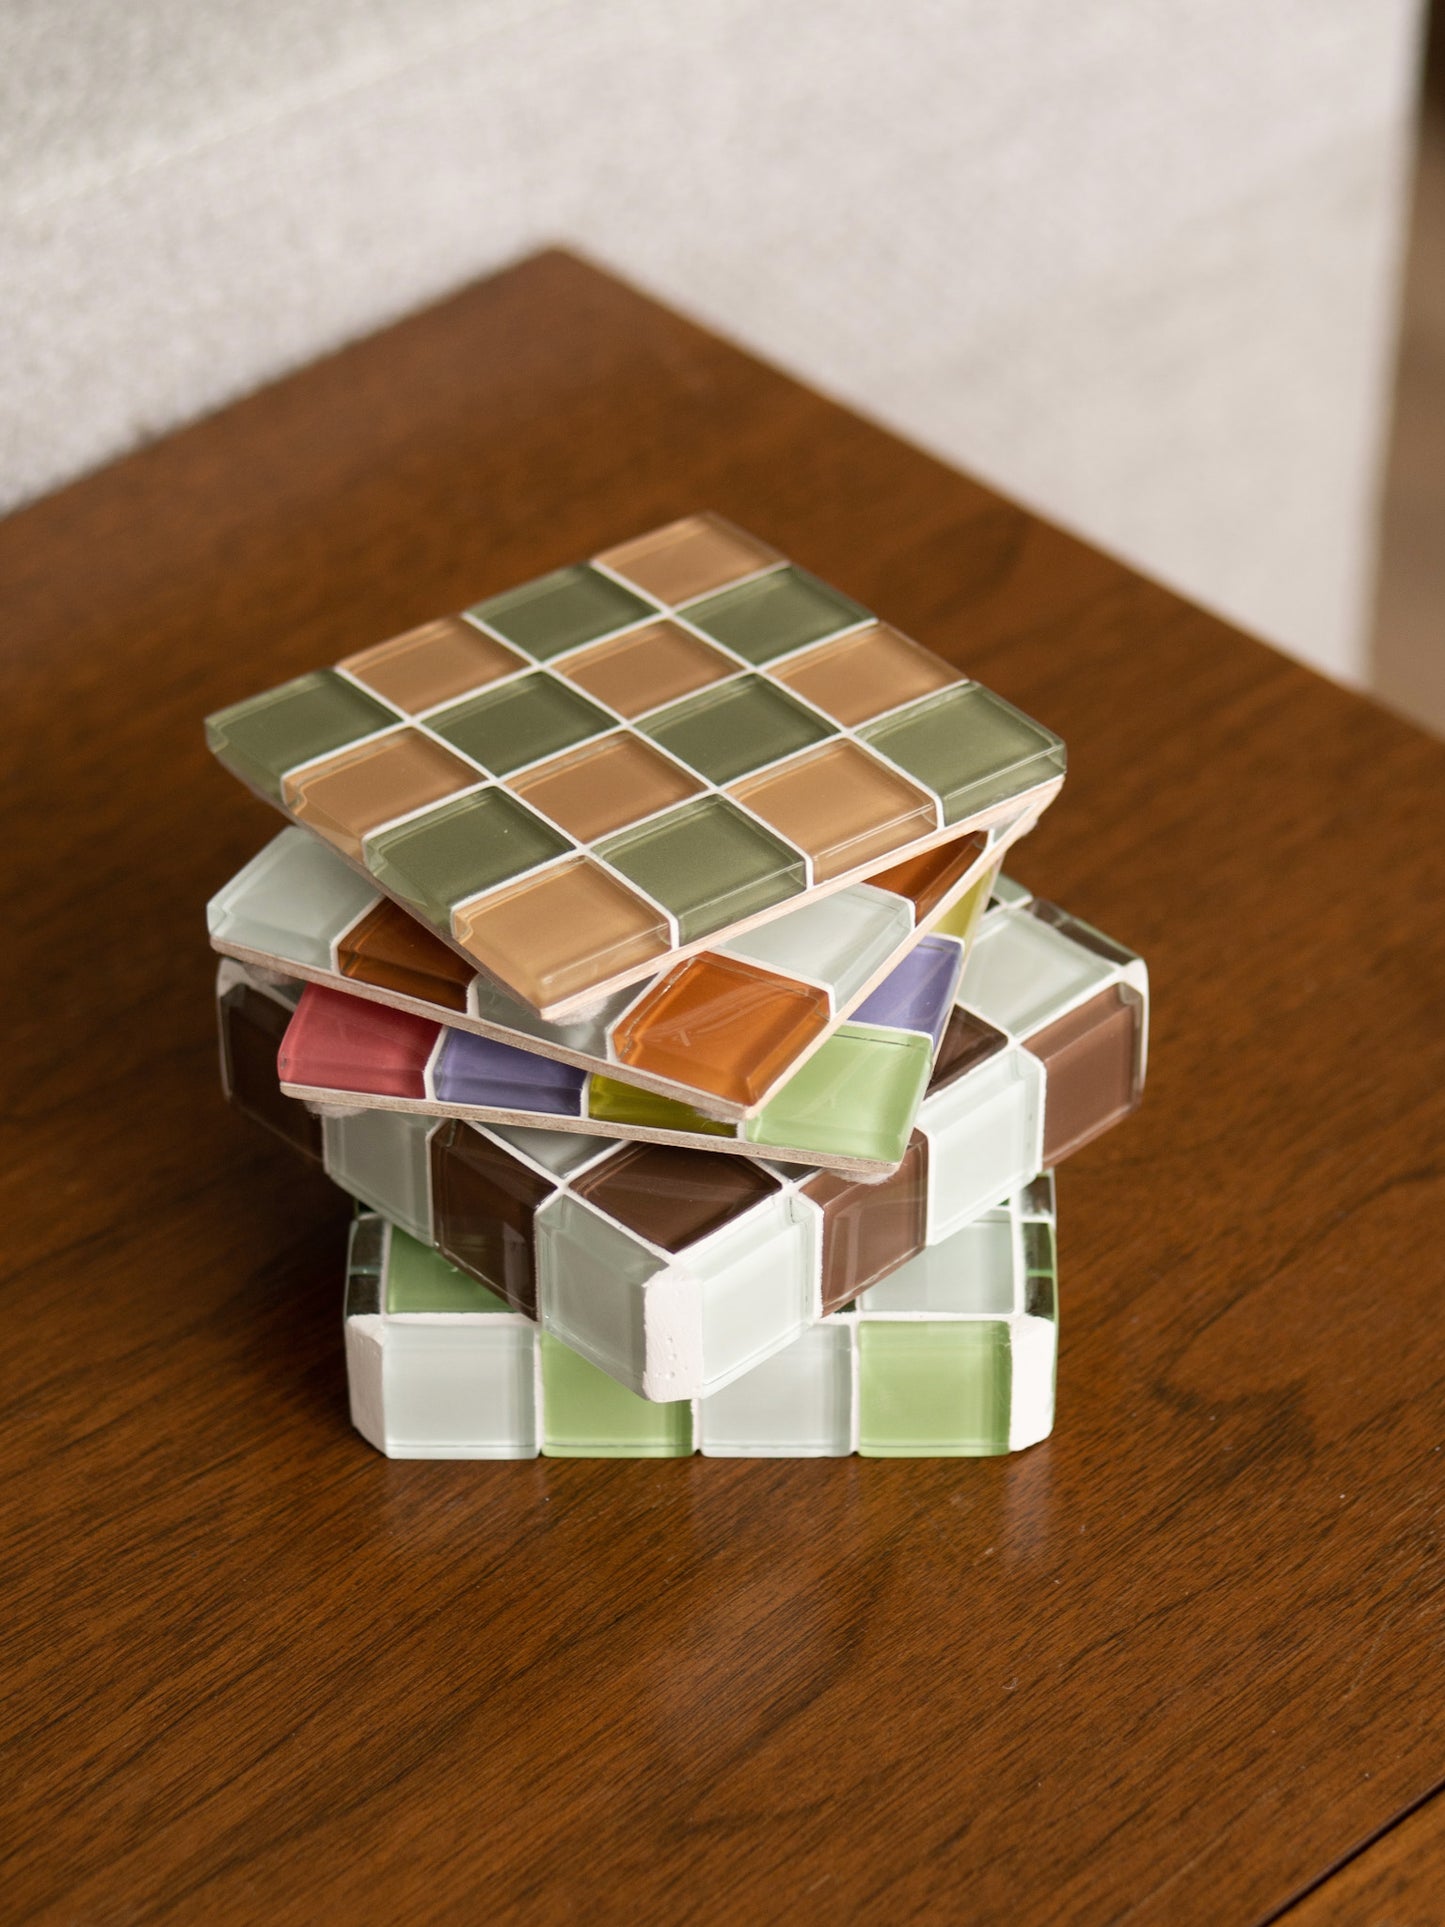 olive—glass tile coaster